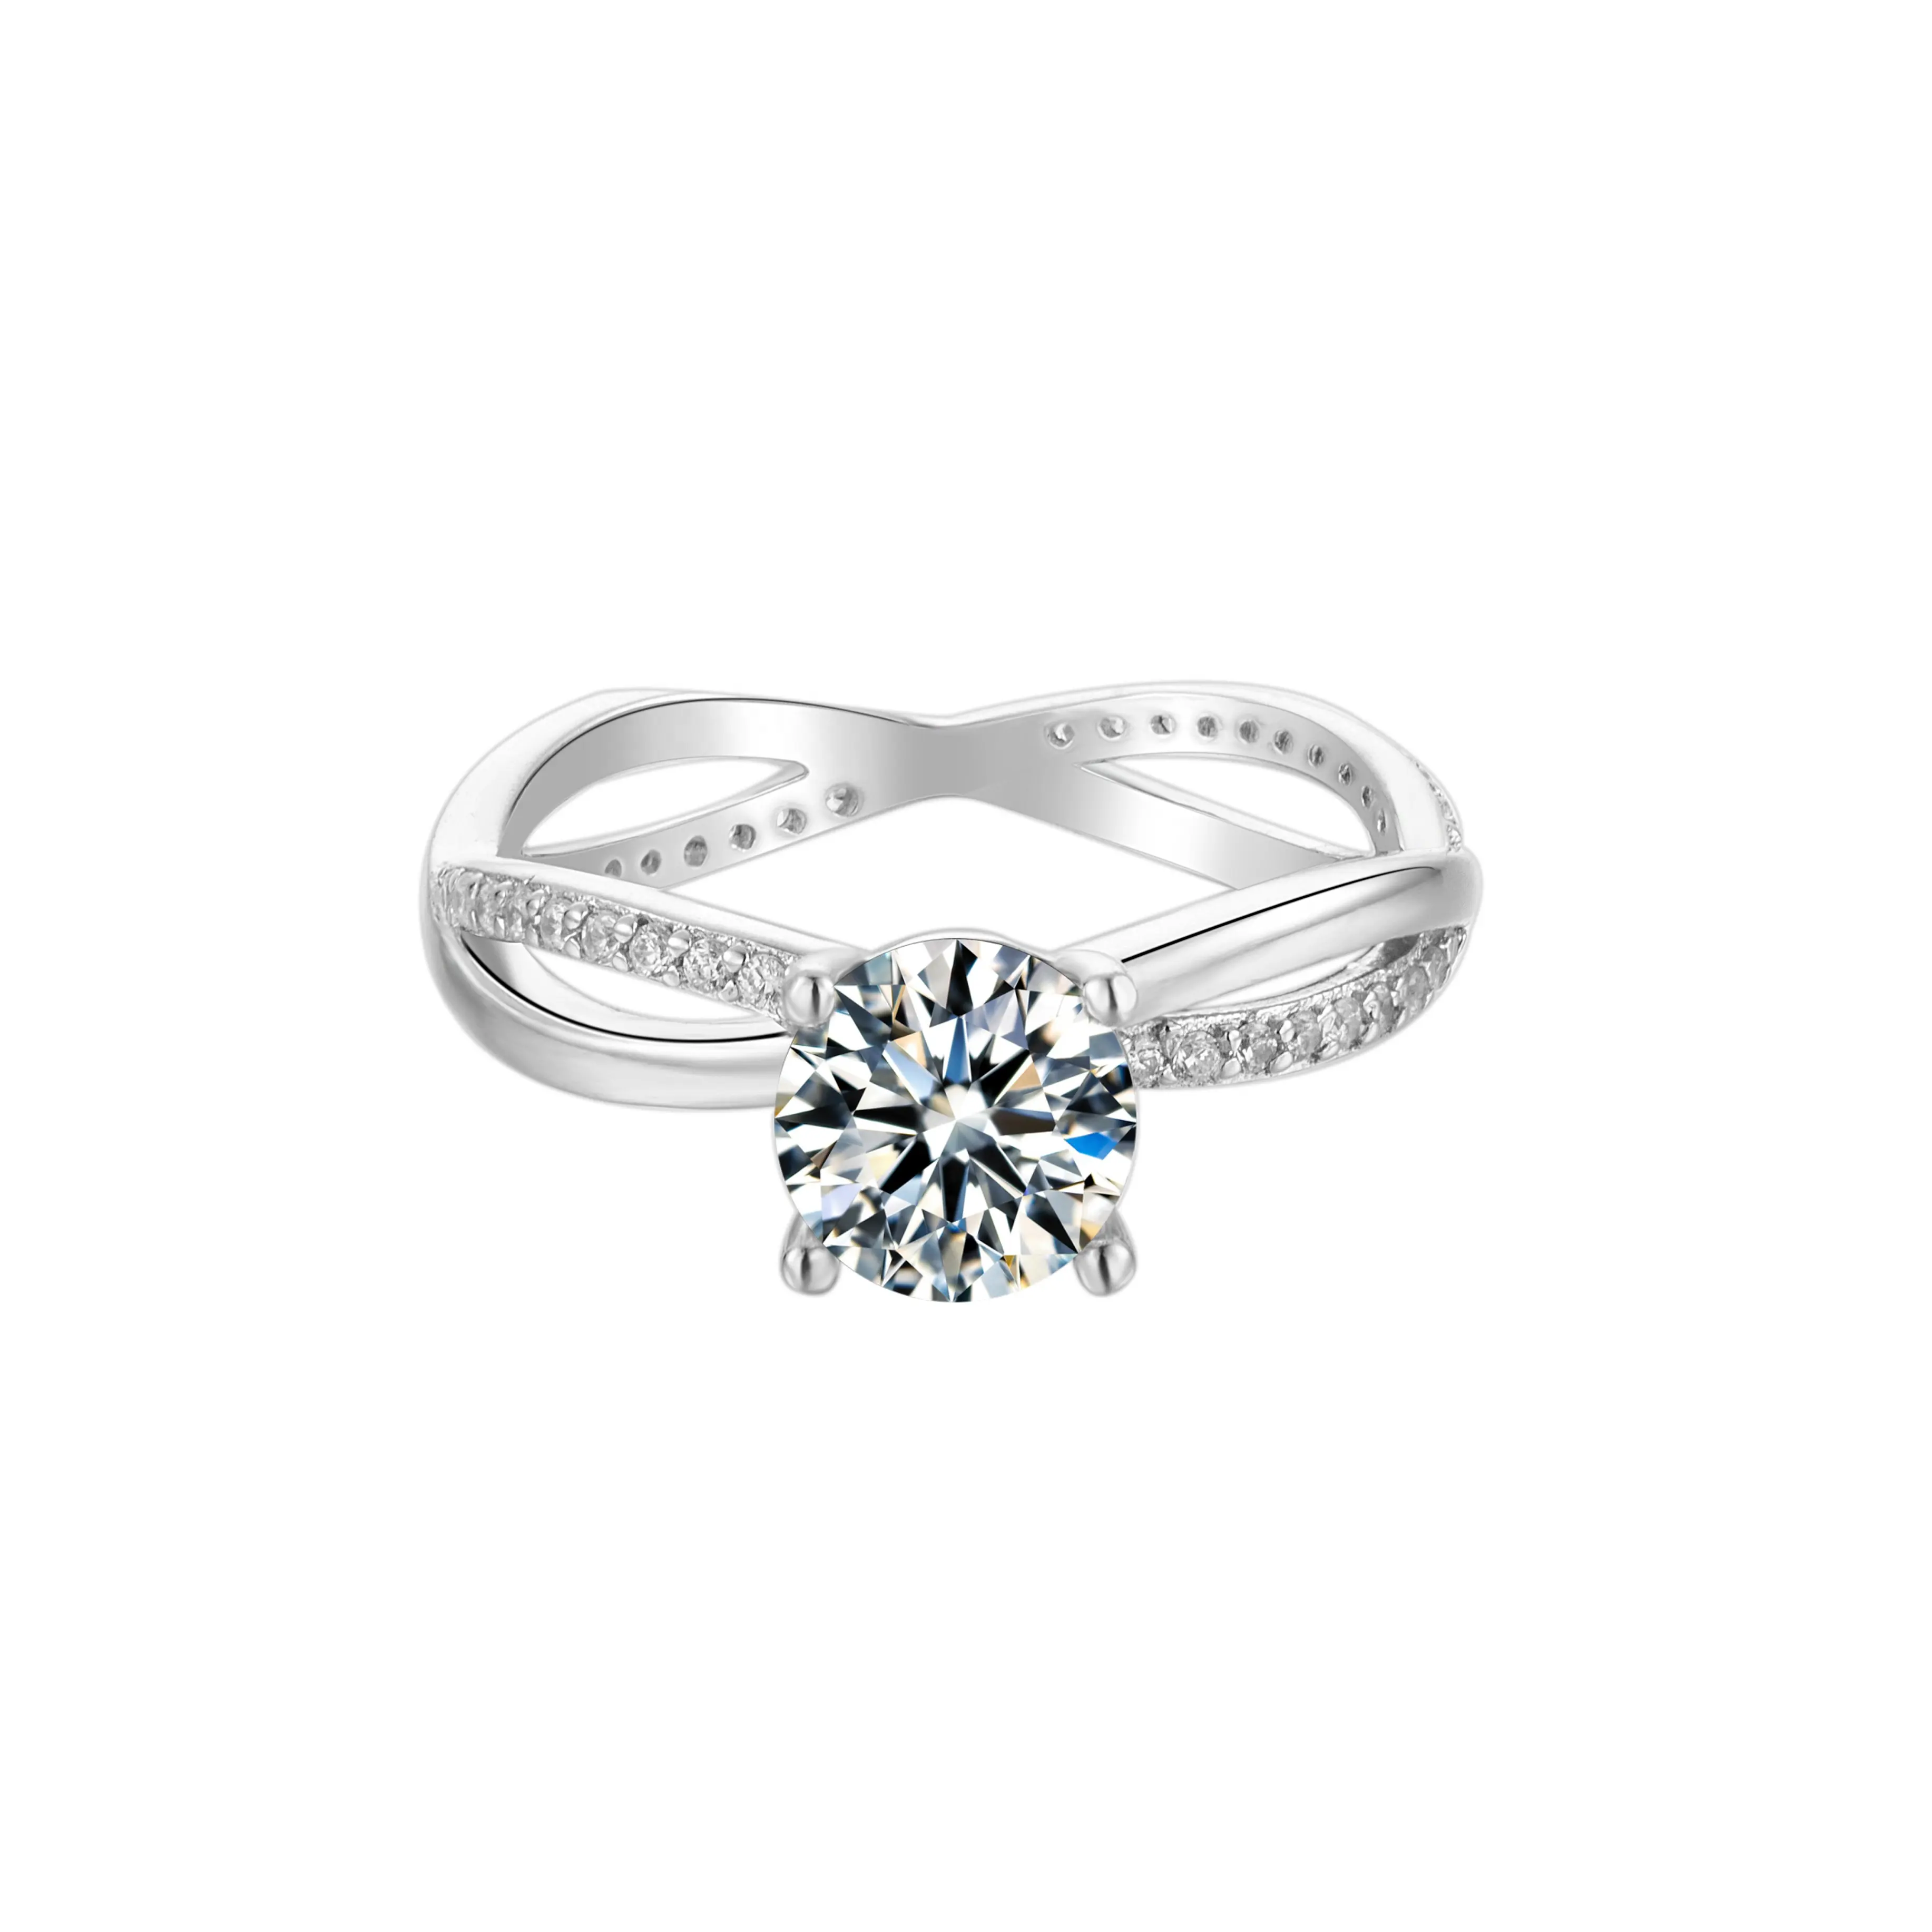 gemstone custom for women finger ring sterling silver 925 engagement wedding moissanite diamond rings